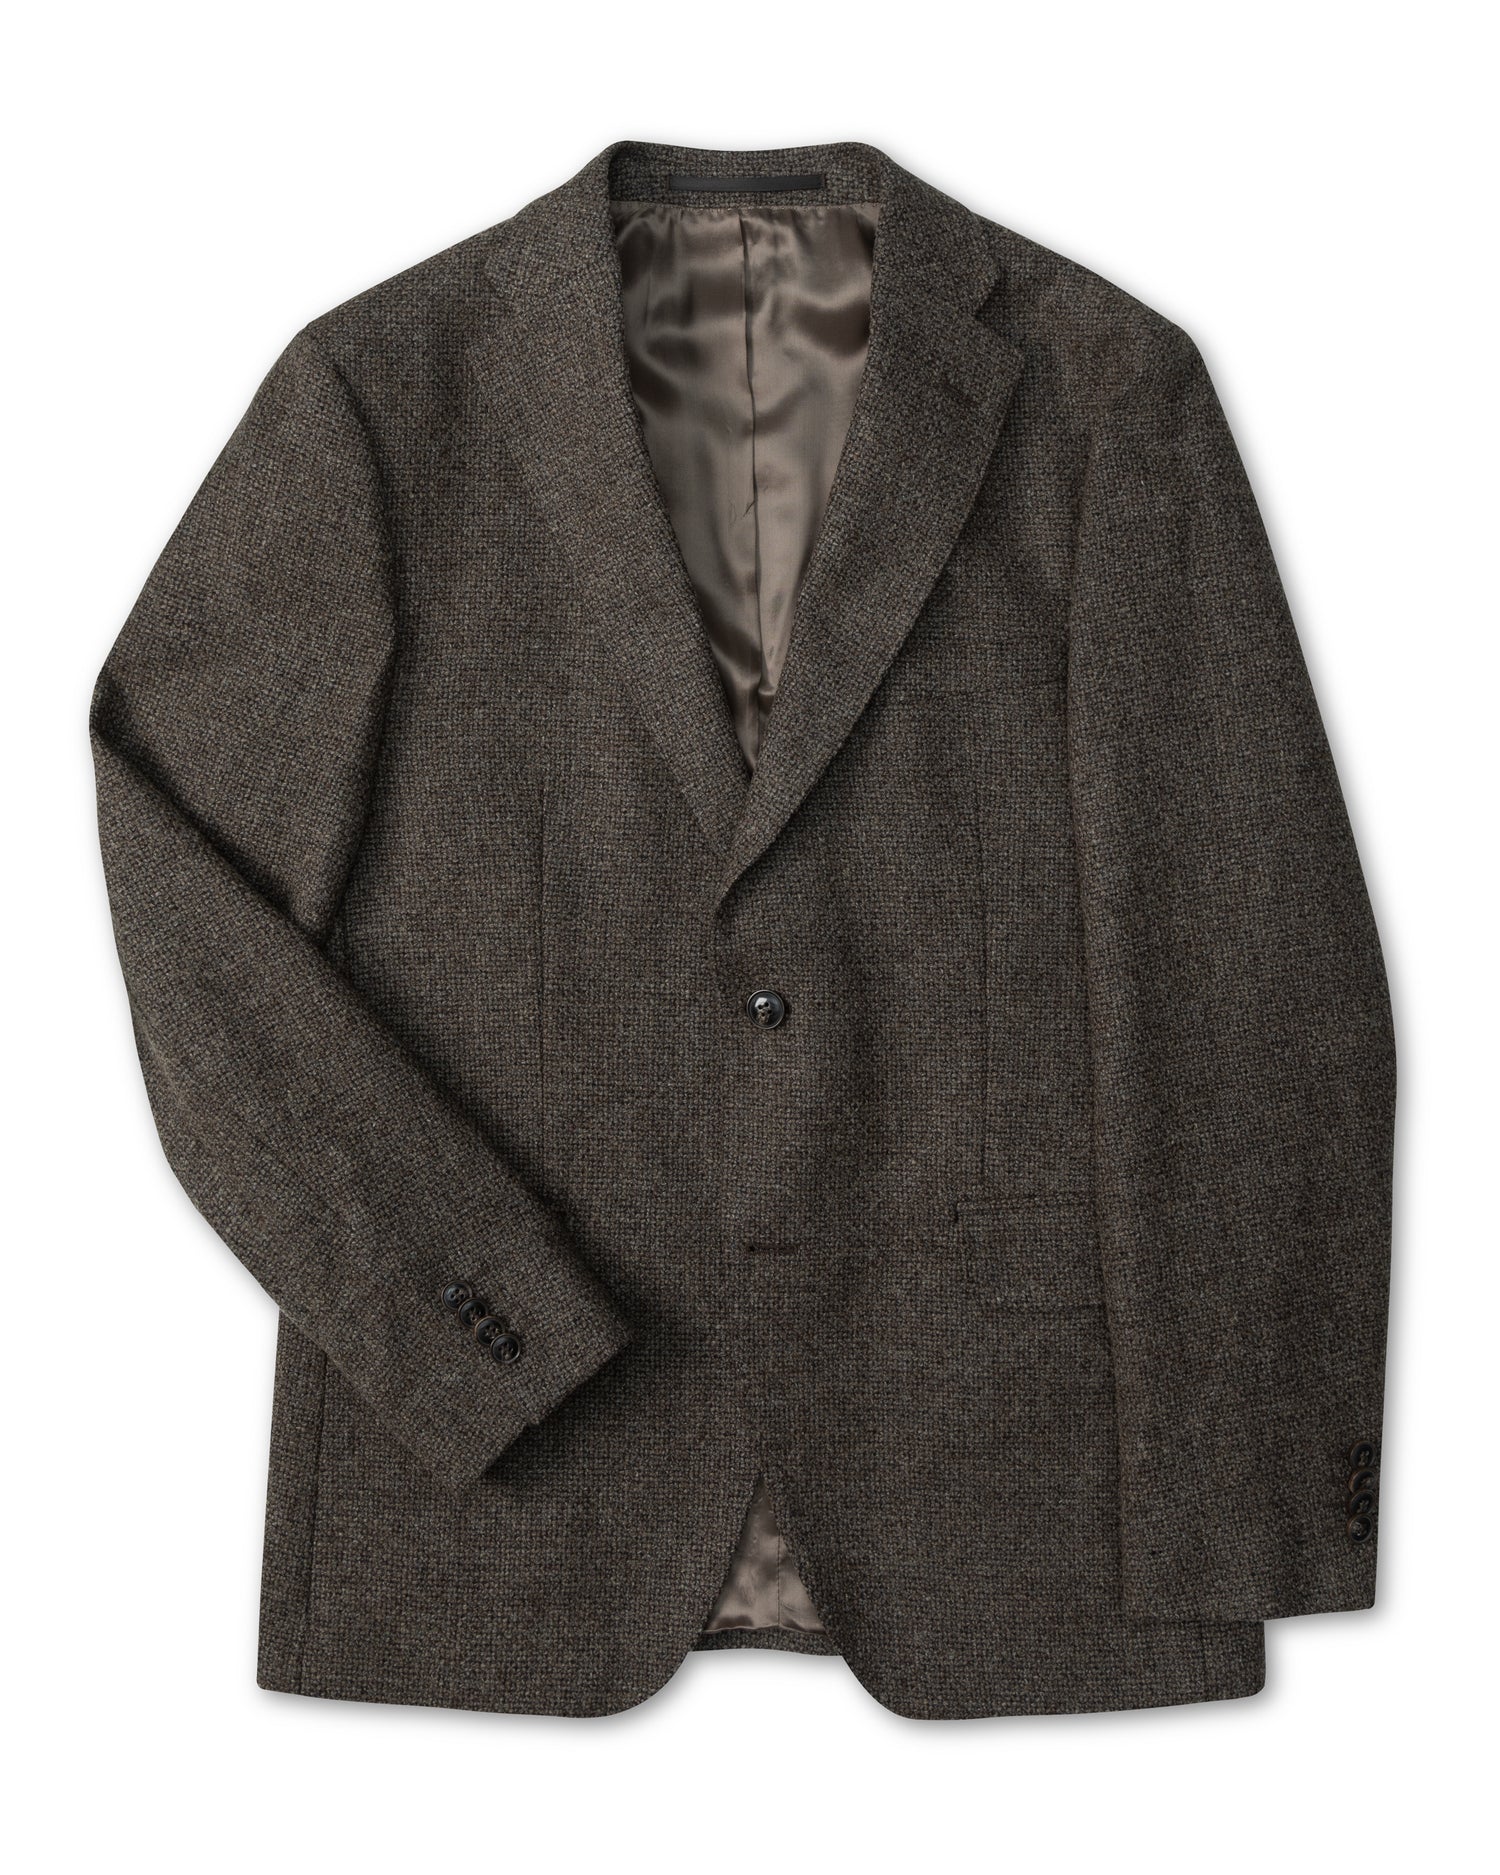 Beige Blazer in Bottoli wool-cashmere-cotton (8456856437066)